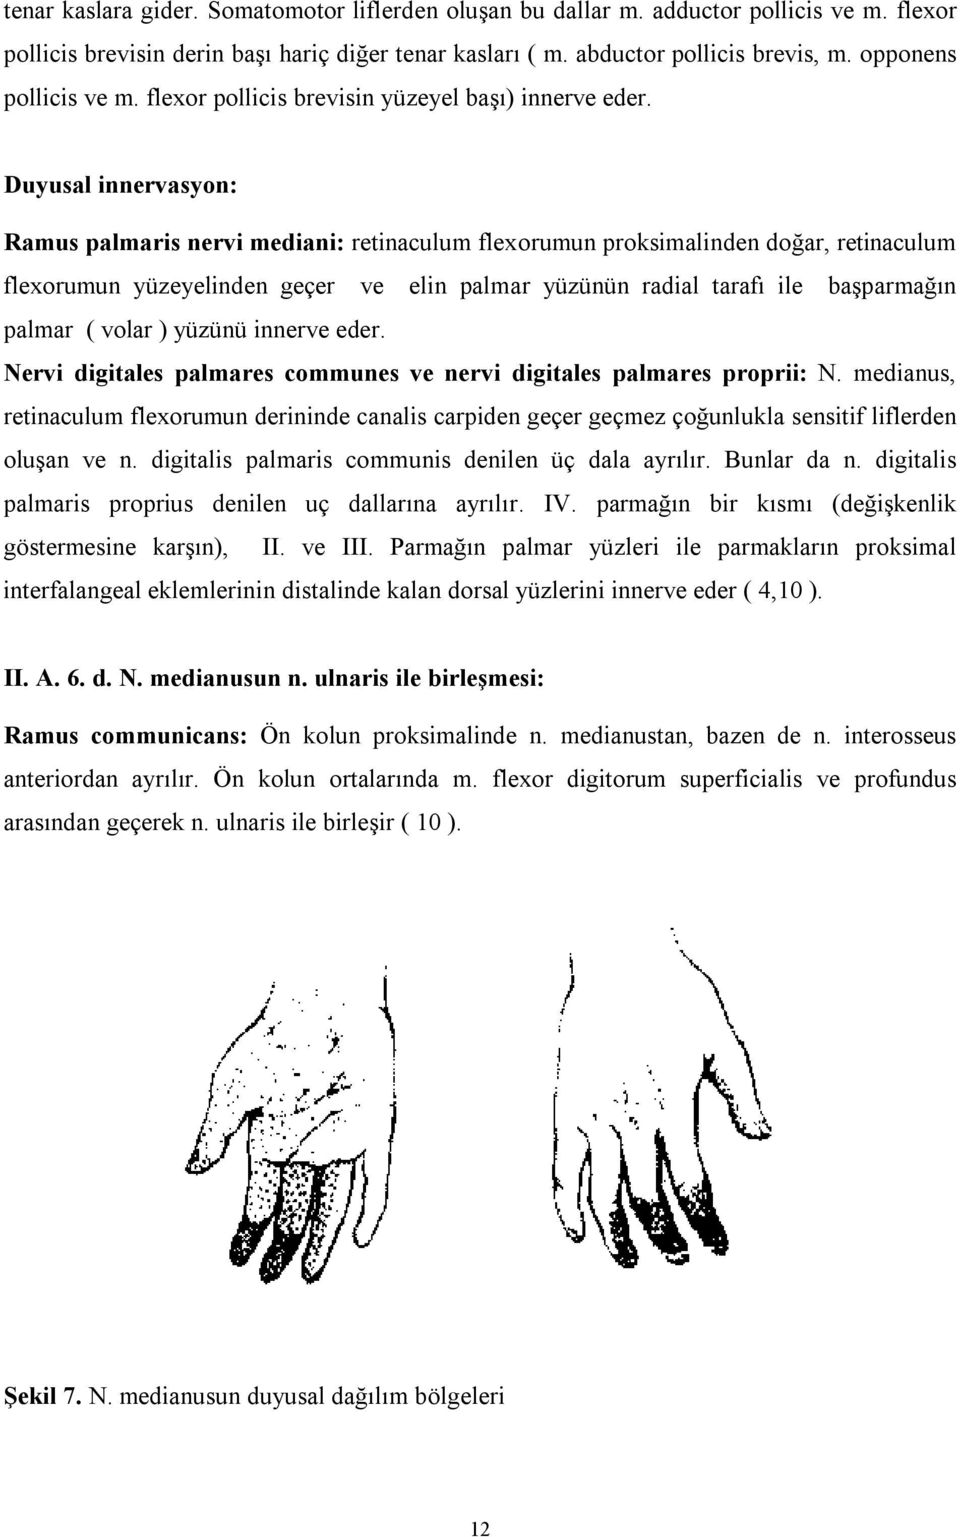 Duyusal innervasyon: Ramus palmaris nervi mediani: retinaculum flexorumun proksimalinden doğar, retinaculum flexorumun yüzeyelinden geçer ve elin palmar yüzünün radial tarafı ile başparmağın palmar (